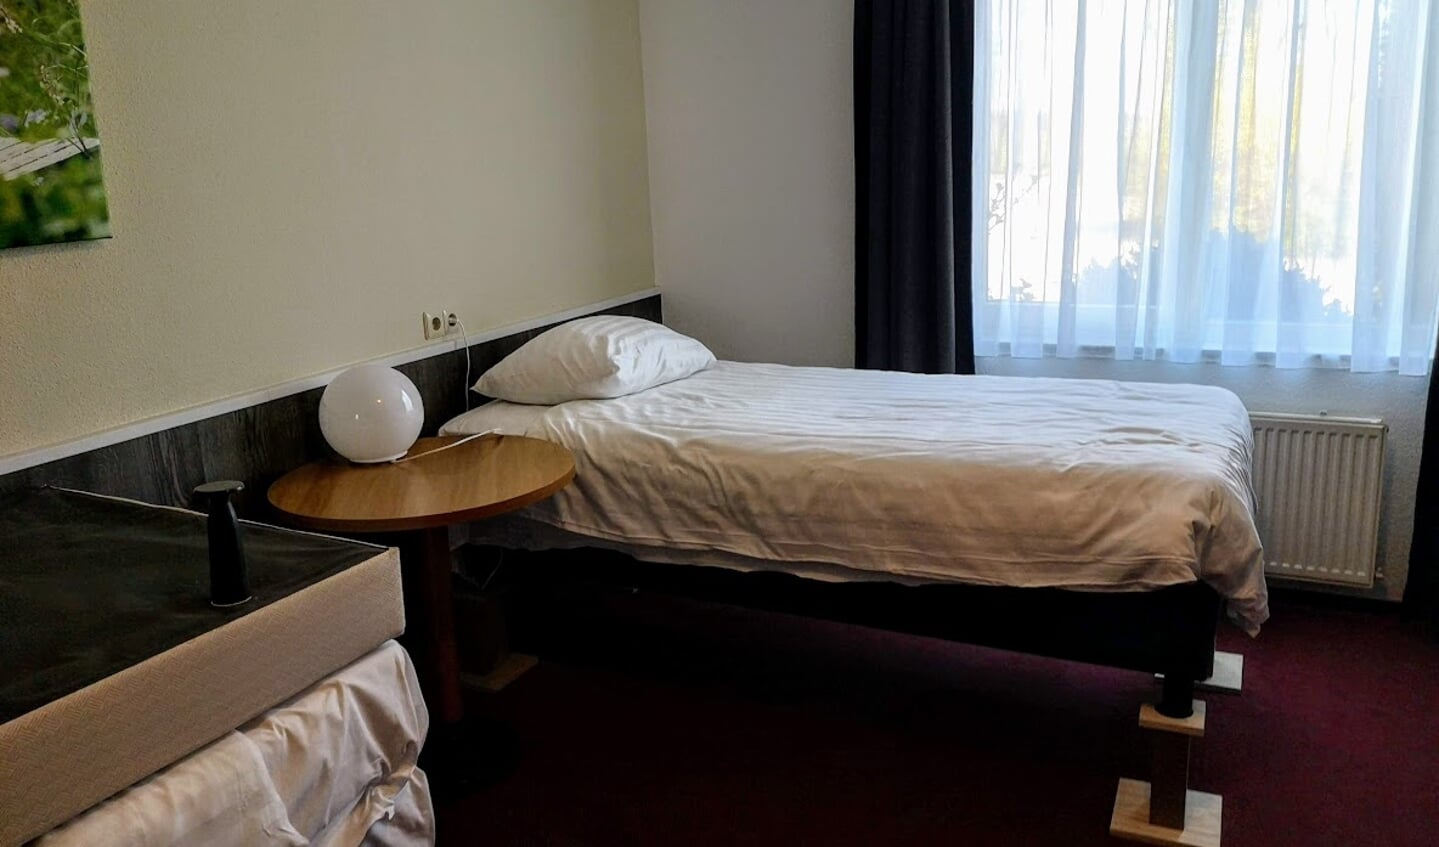 De bedden in de hotelkamers zijn op houten klossen geplaatst. Foto: Henri Bruntink